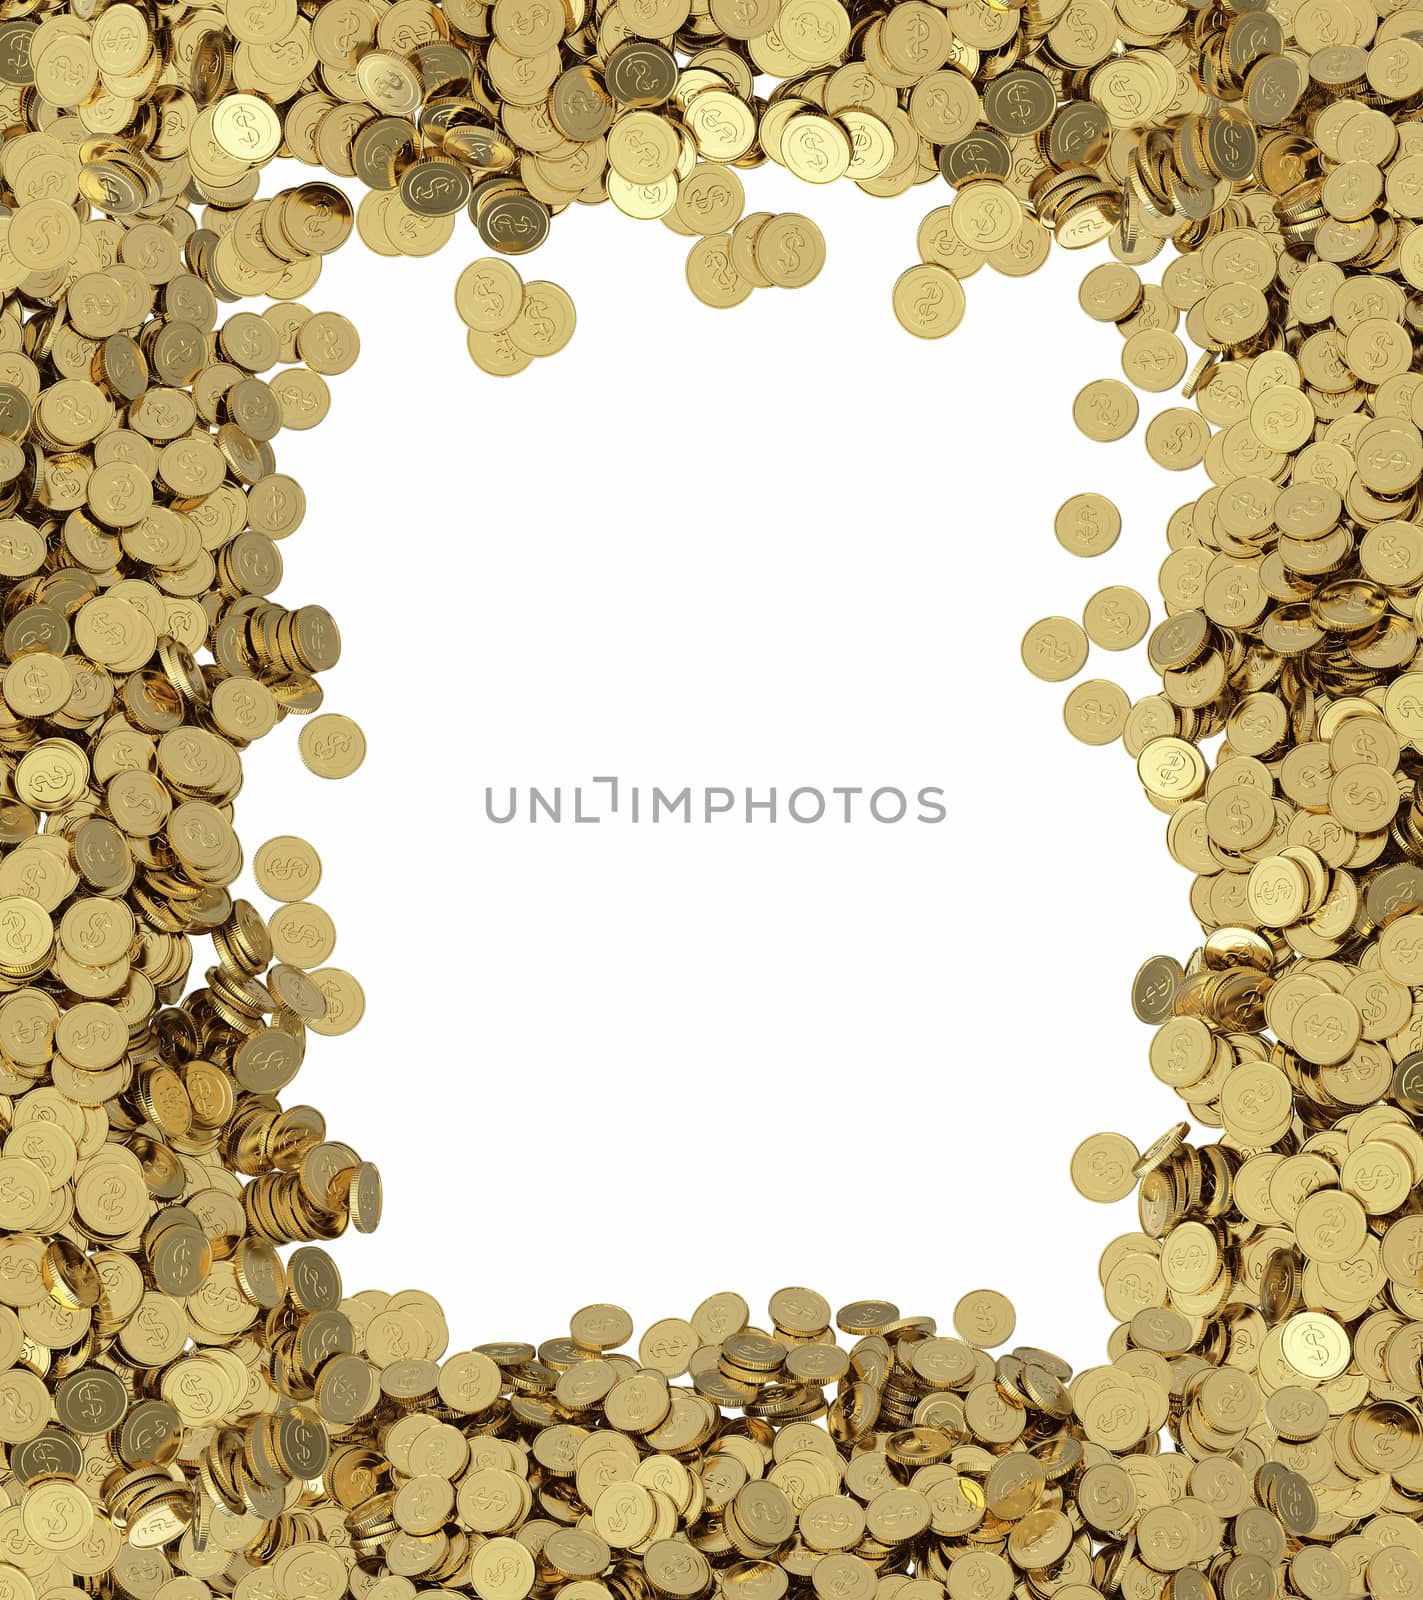 golden dollar coins background by 123dartist